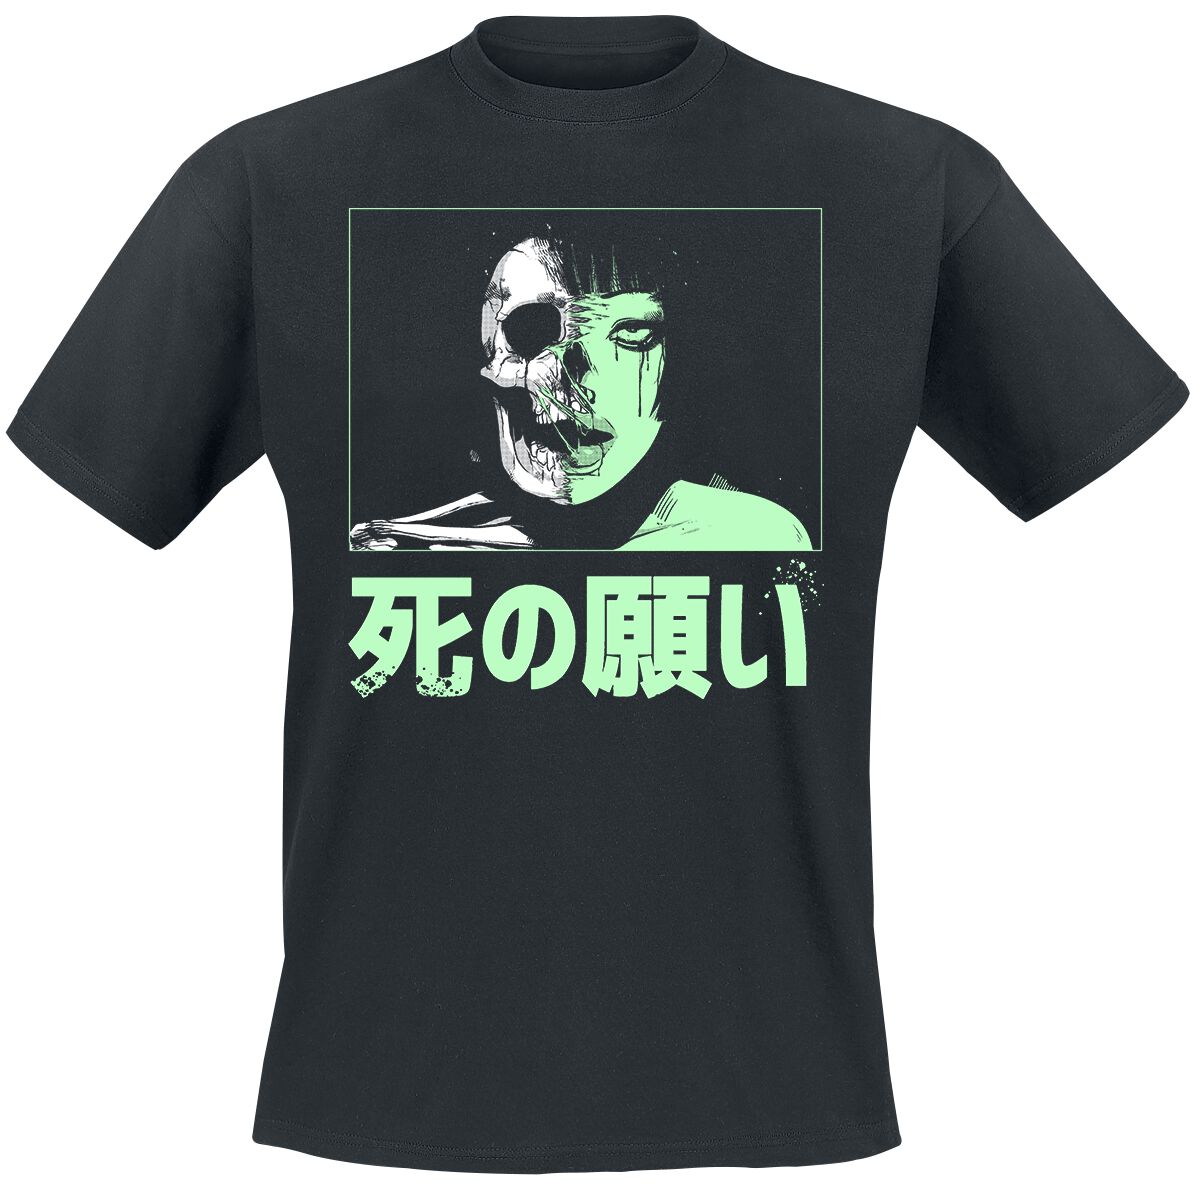 Zombie Makeout Club T-Shirt - ZMC - Half Life - S bis XL - für Männer - Größe S - schwarz  - Lizenzierter Fanartikel